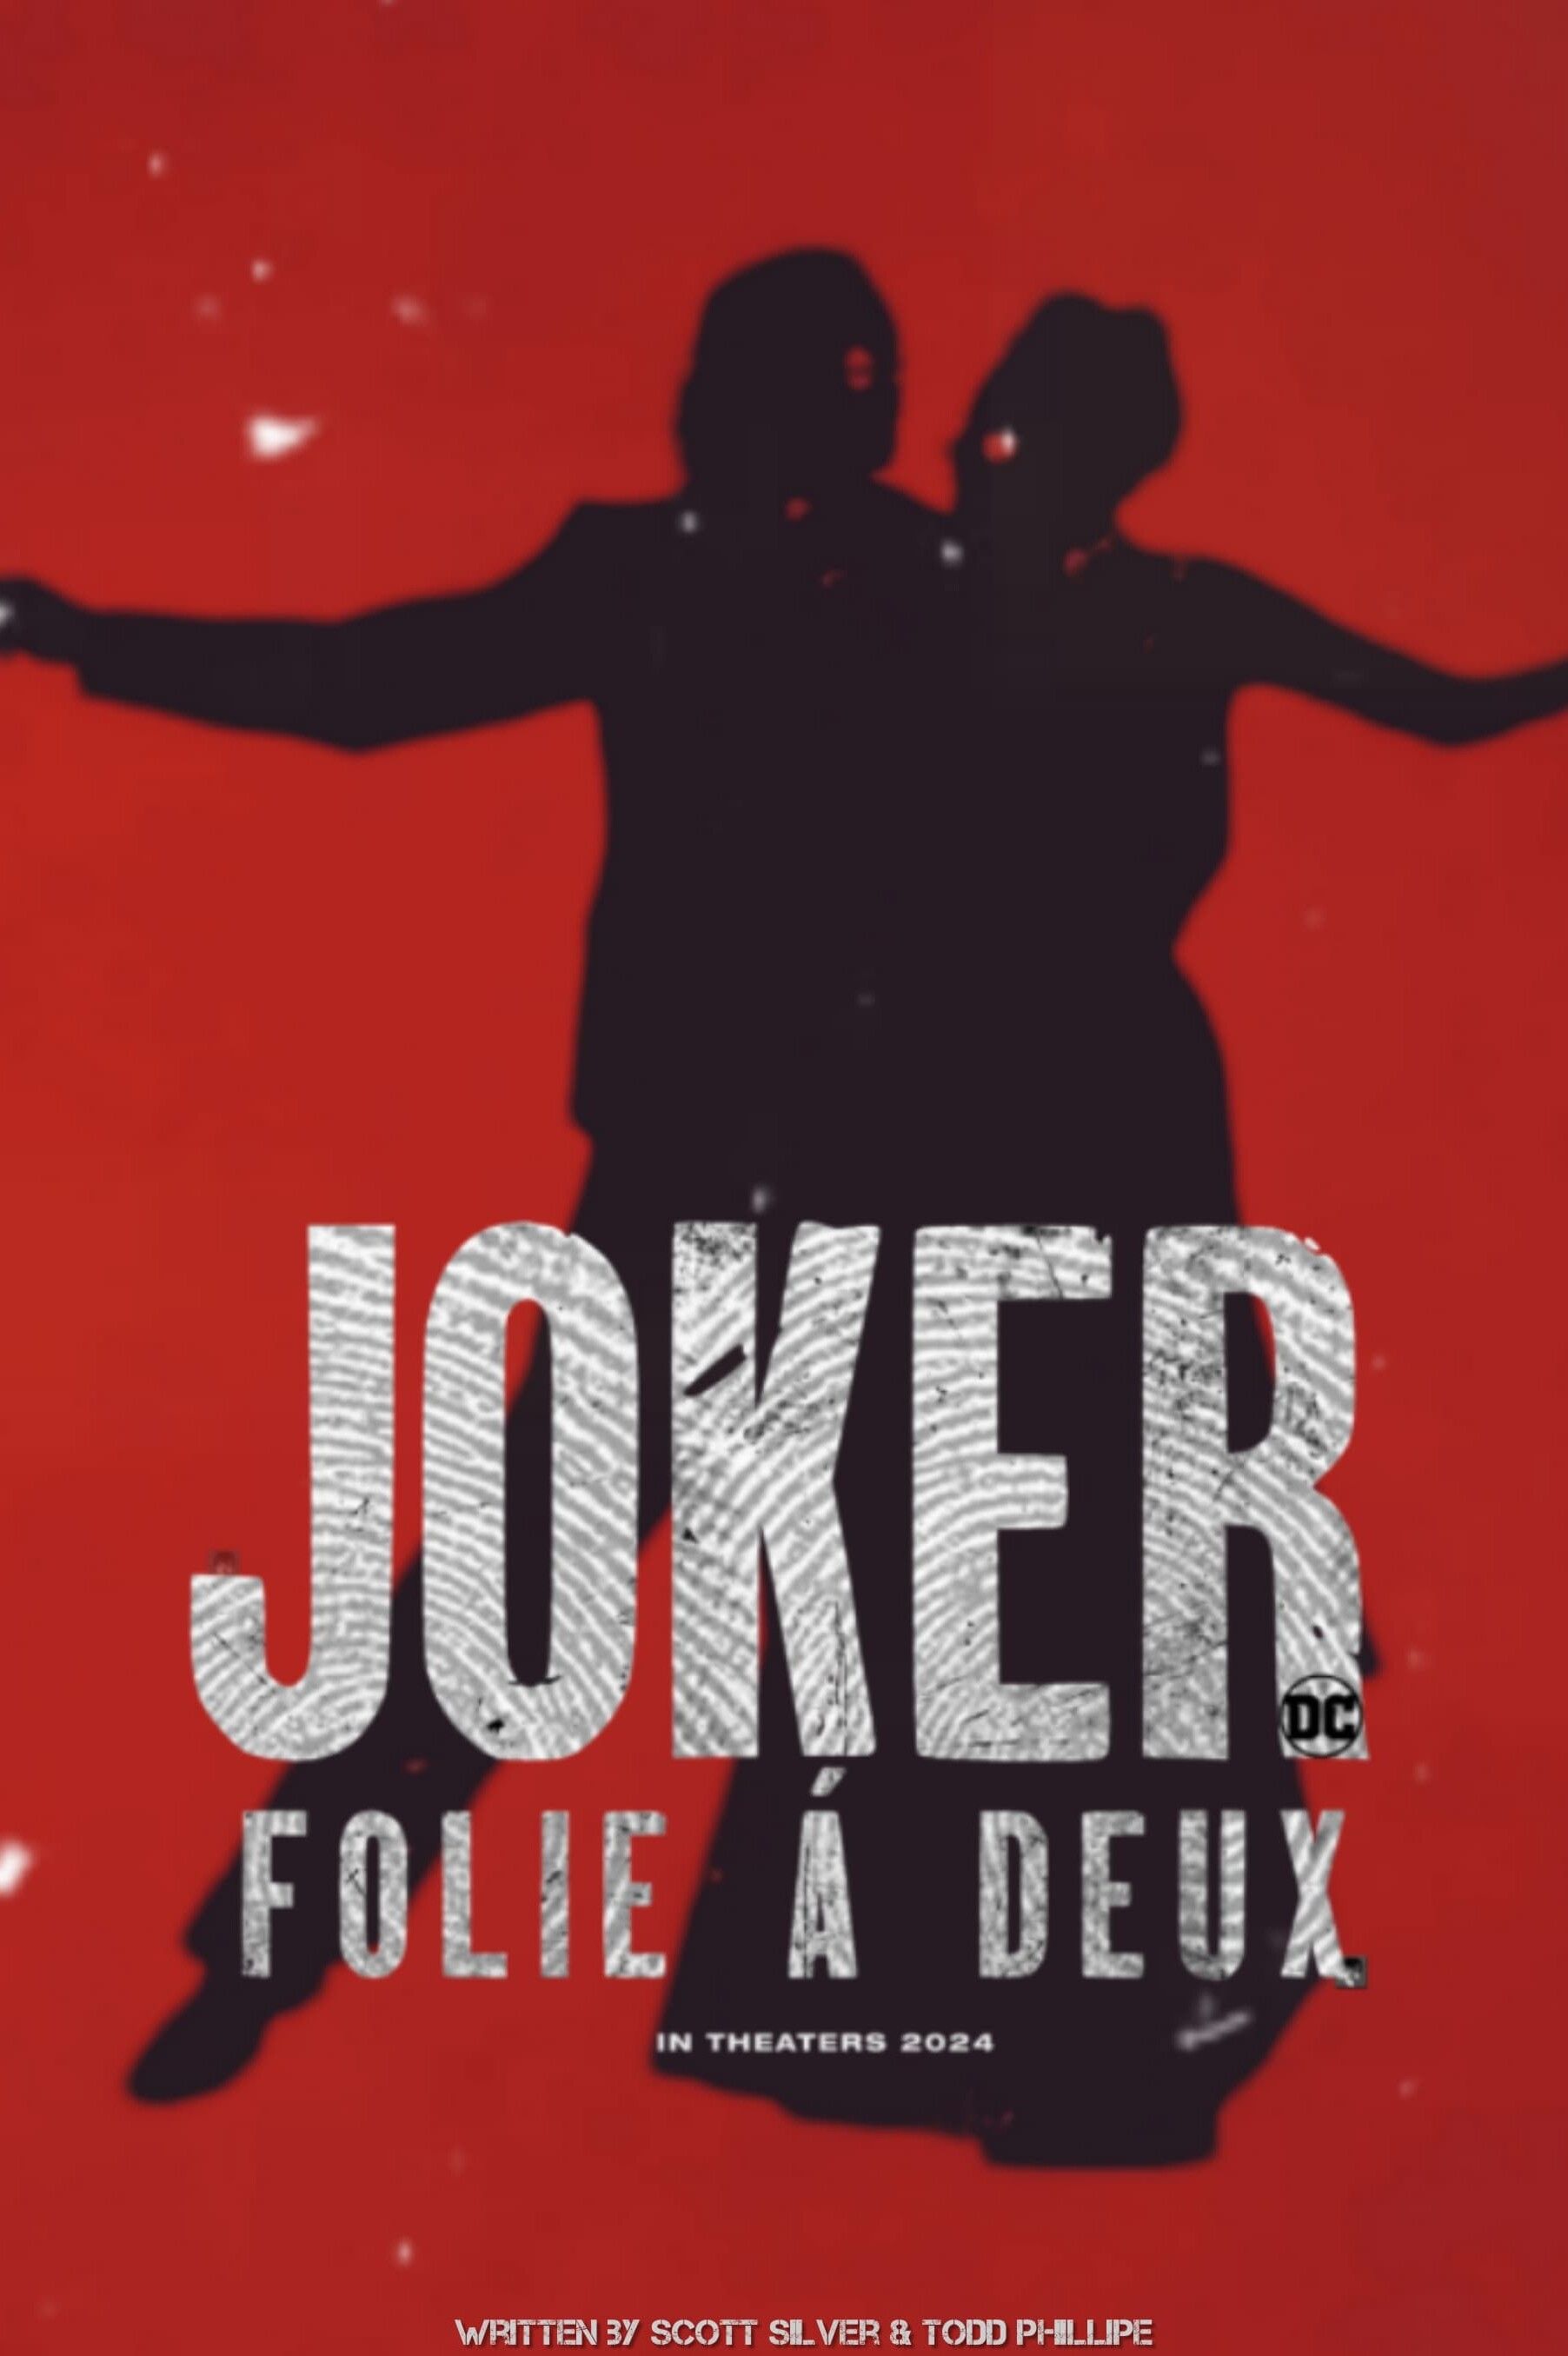 Joker 2 Folie à Deux (2024) Filminformation und Trailer KinoCheck